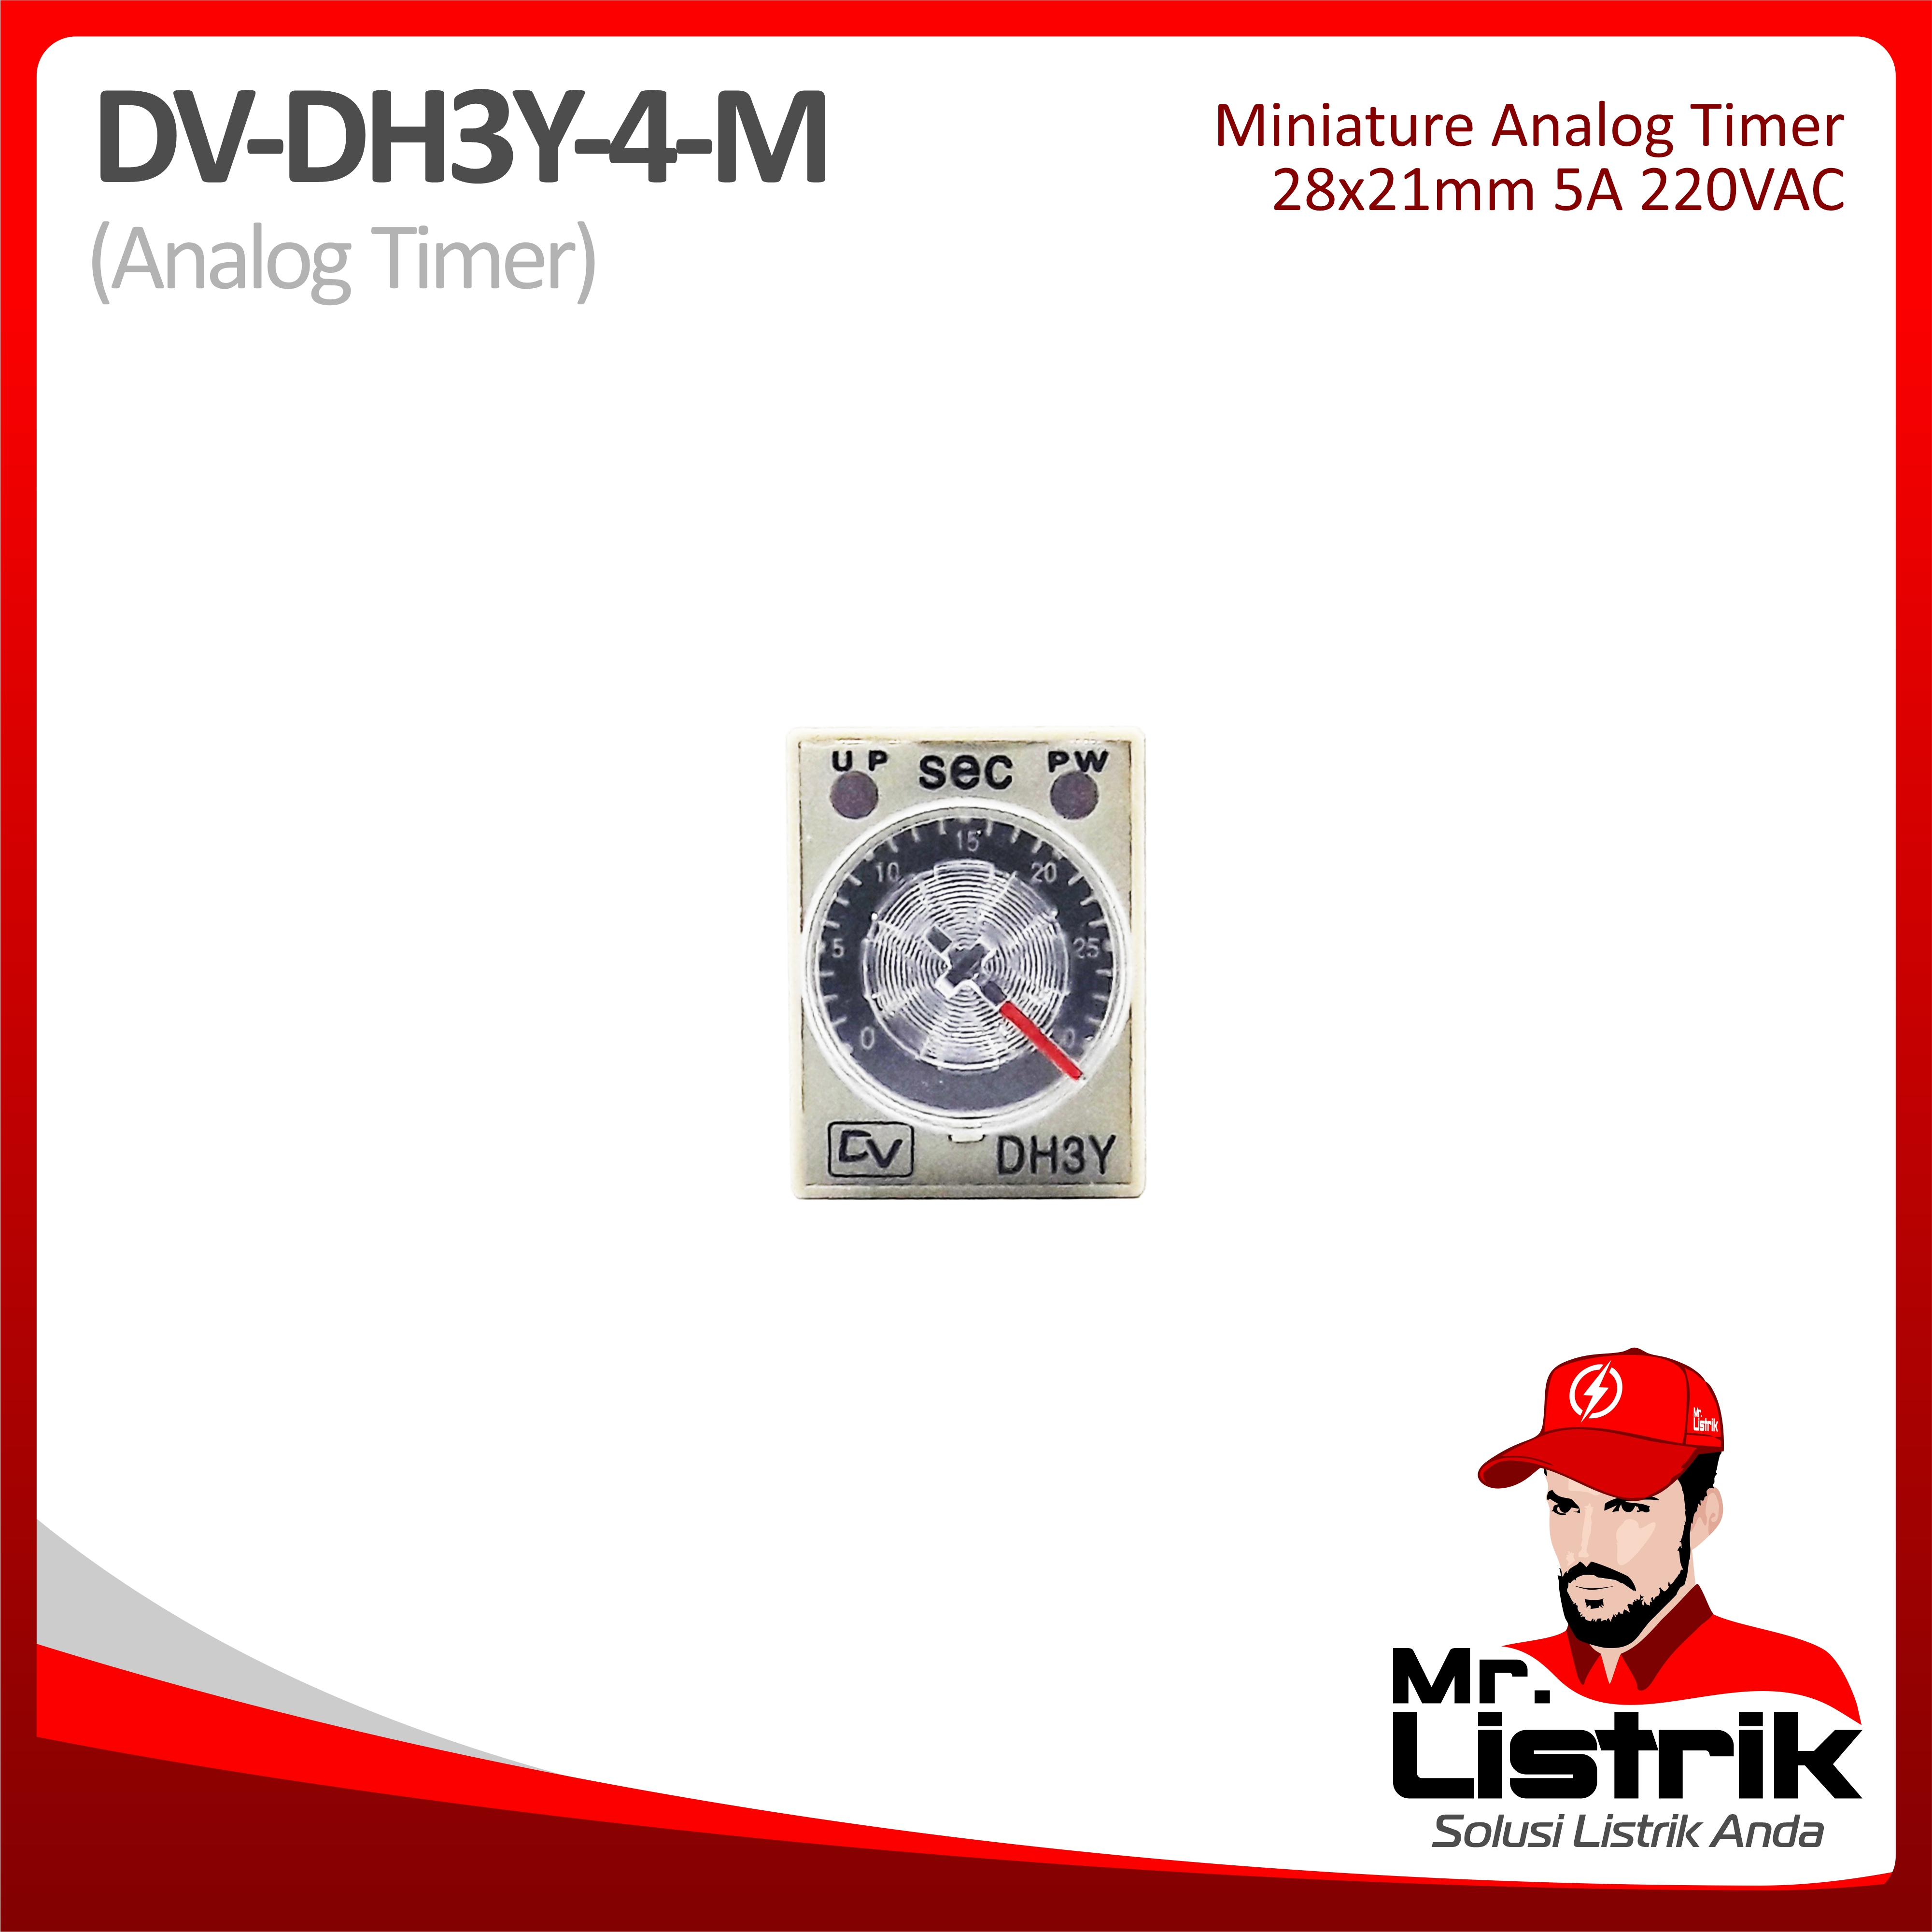 Miniature Analog Timer DV DH3Y-4-M